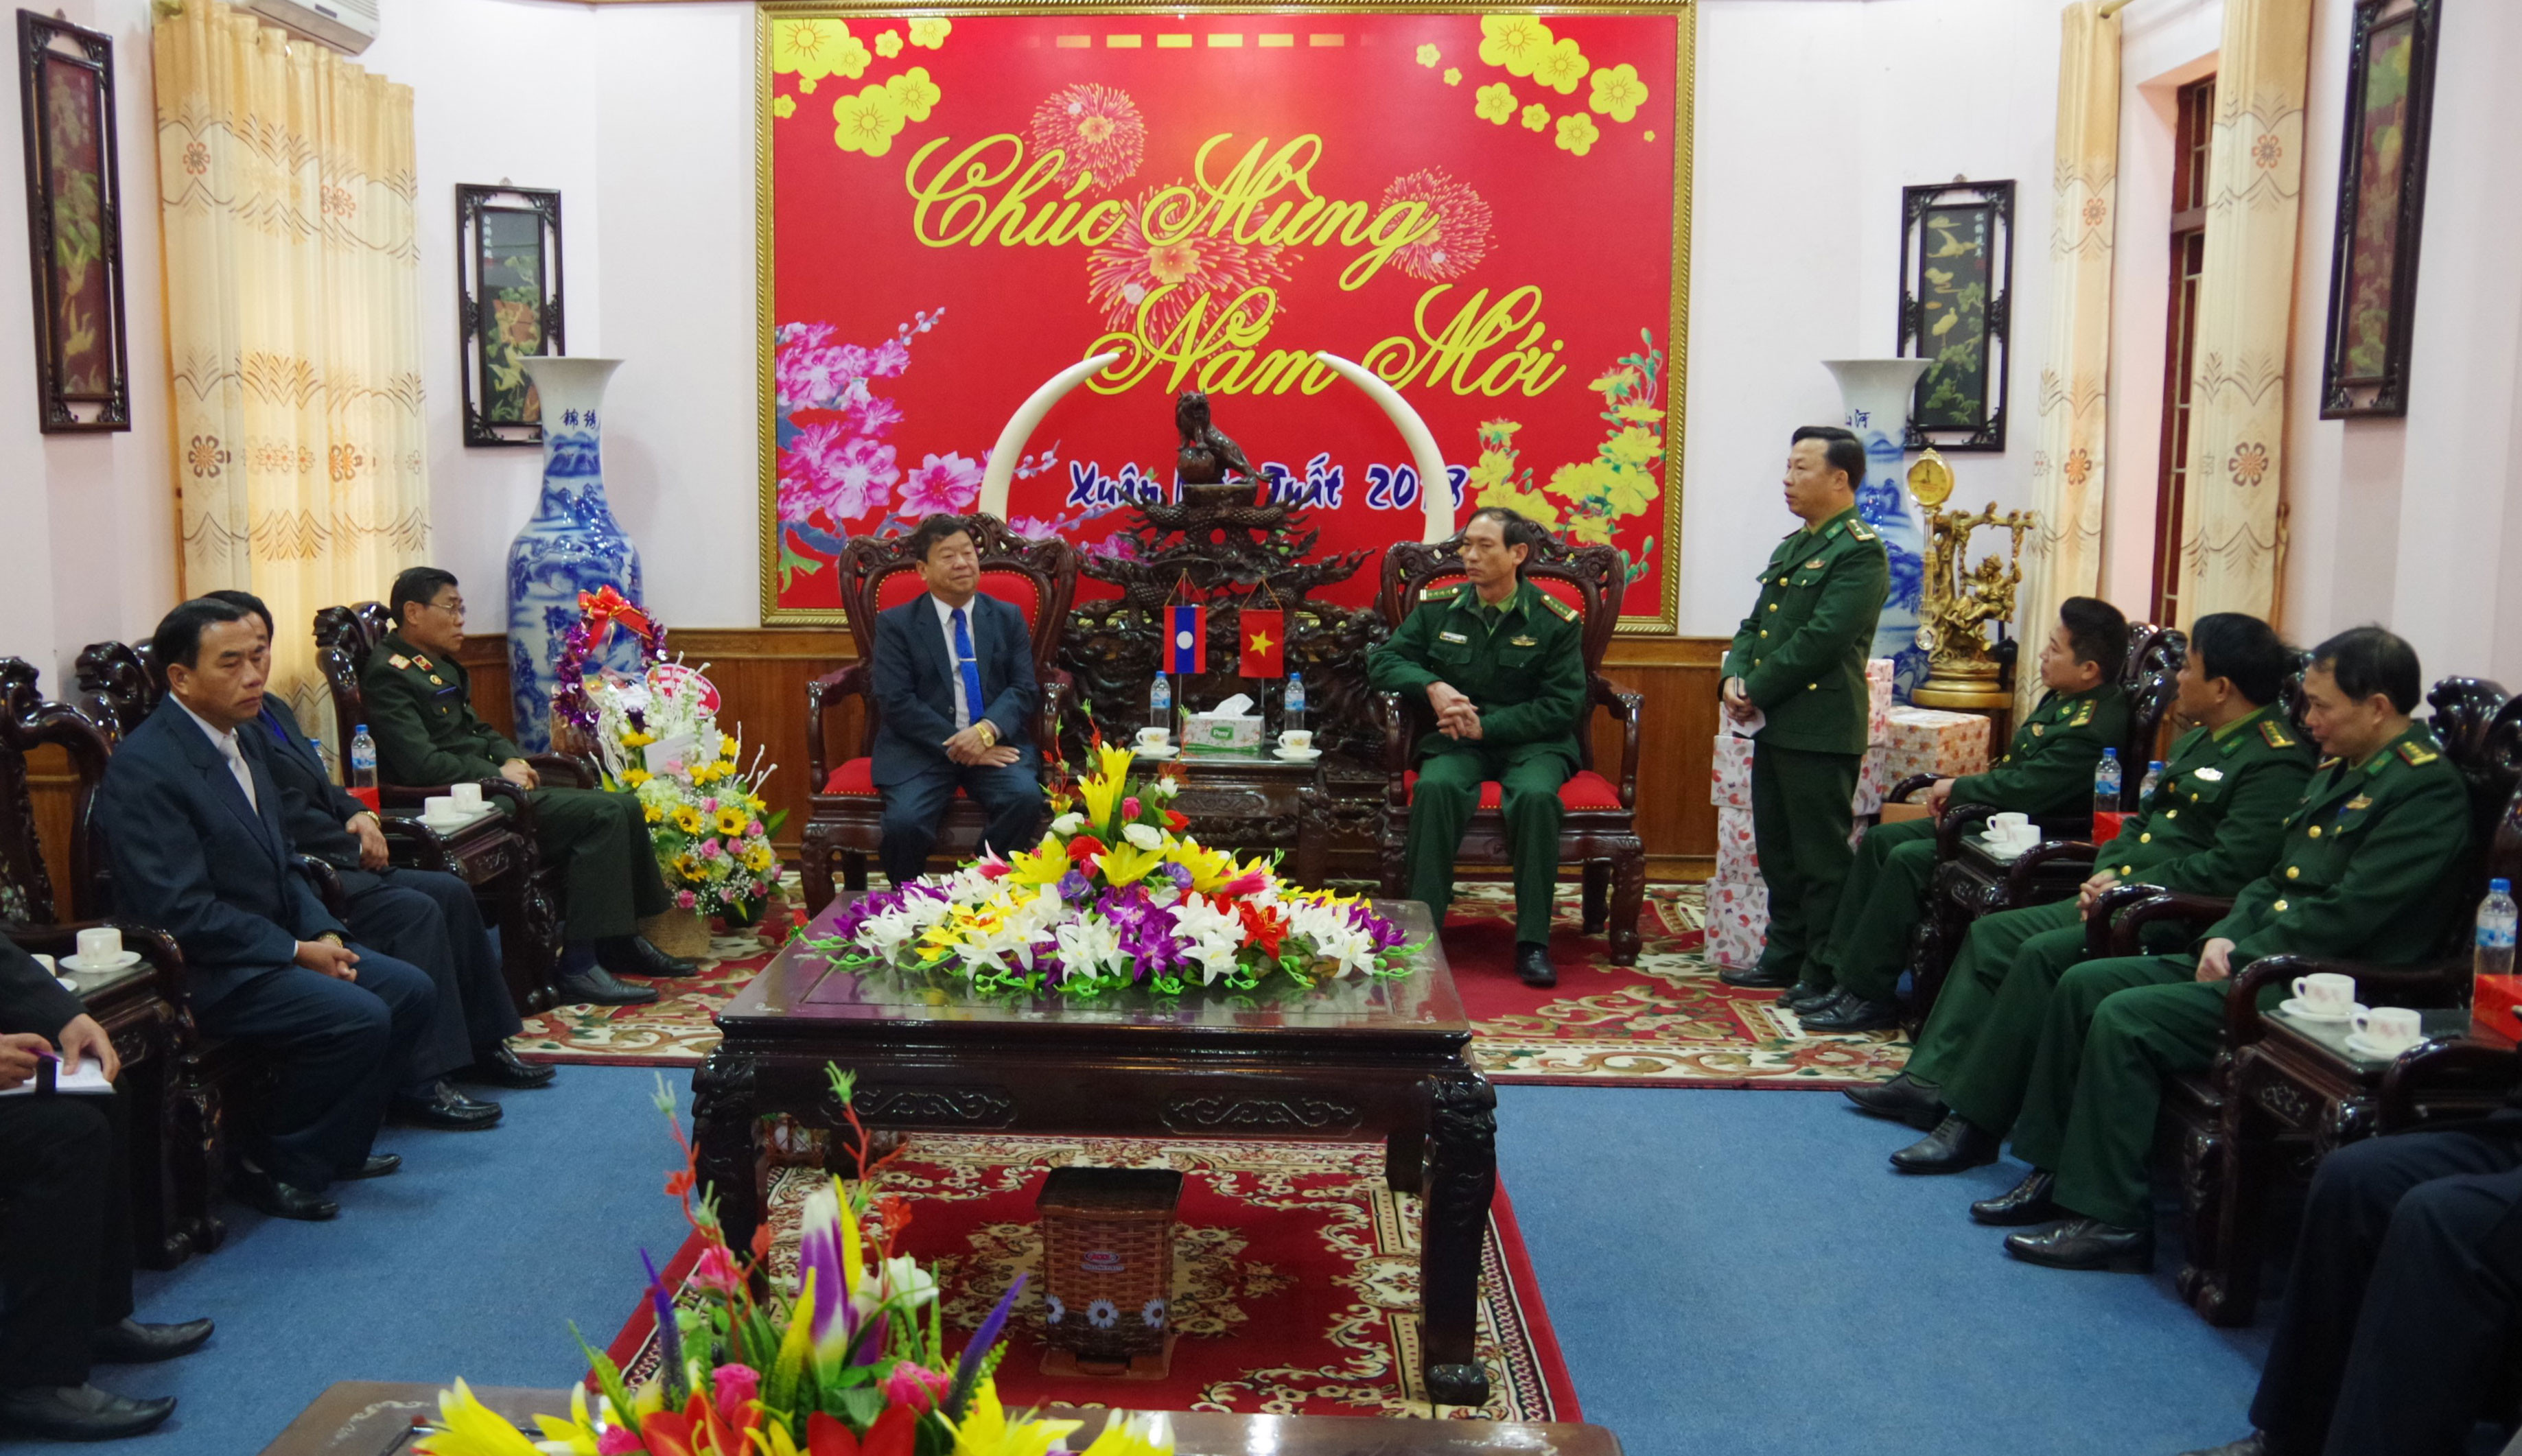 Lãnh đạo tỉnh Xiêng Khoảng (Lào) sang thăm, chúc Tết Mậu Tuất cán bộ chiến sỹ BĐBP Nghệ An. Ảnh: Hùng Phong